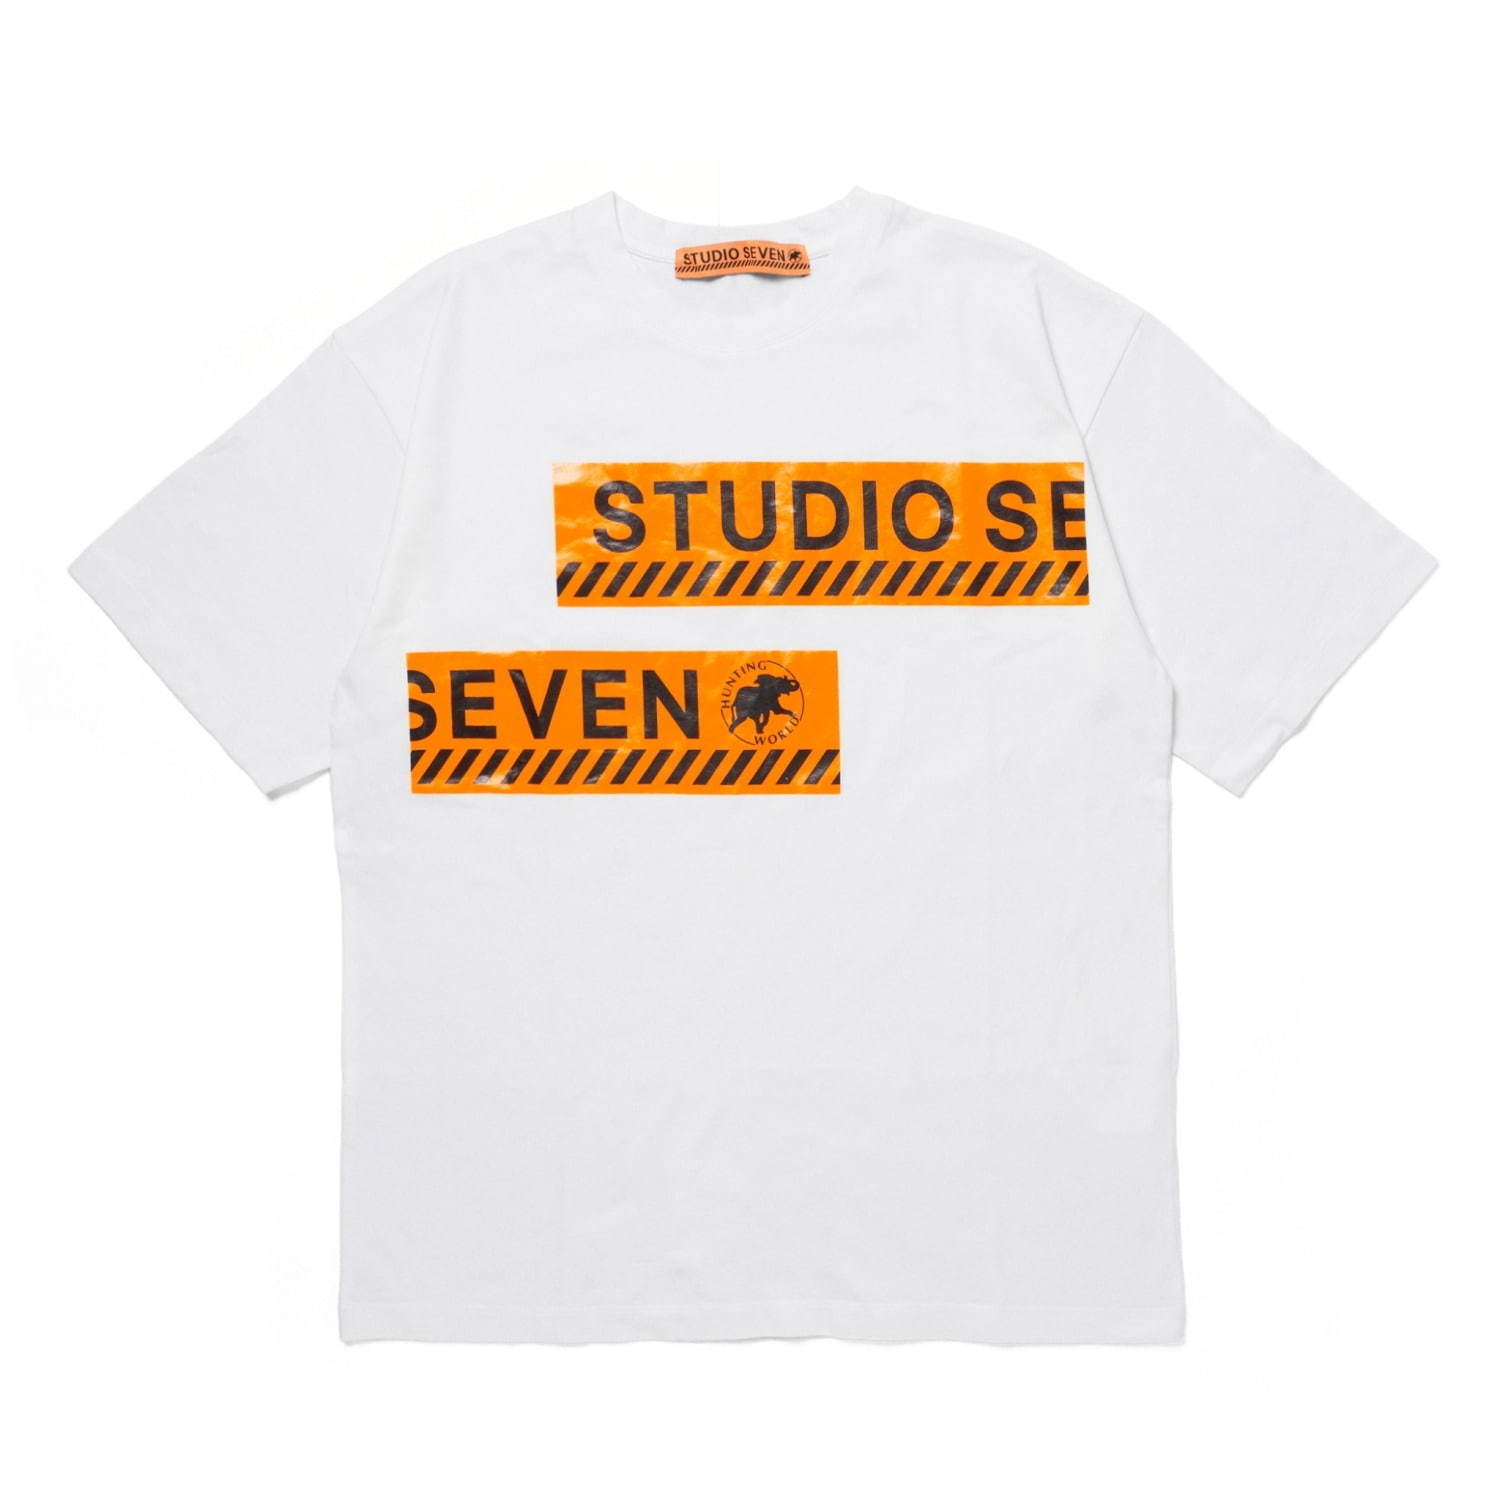 〈スタジオ セブン×ハンティング・ワールド〉ダンスウェア着想のロゴTシャツ